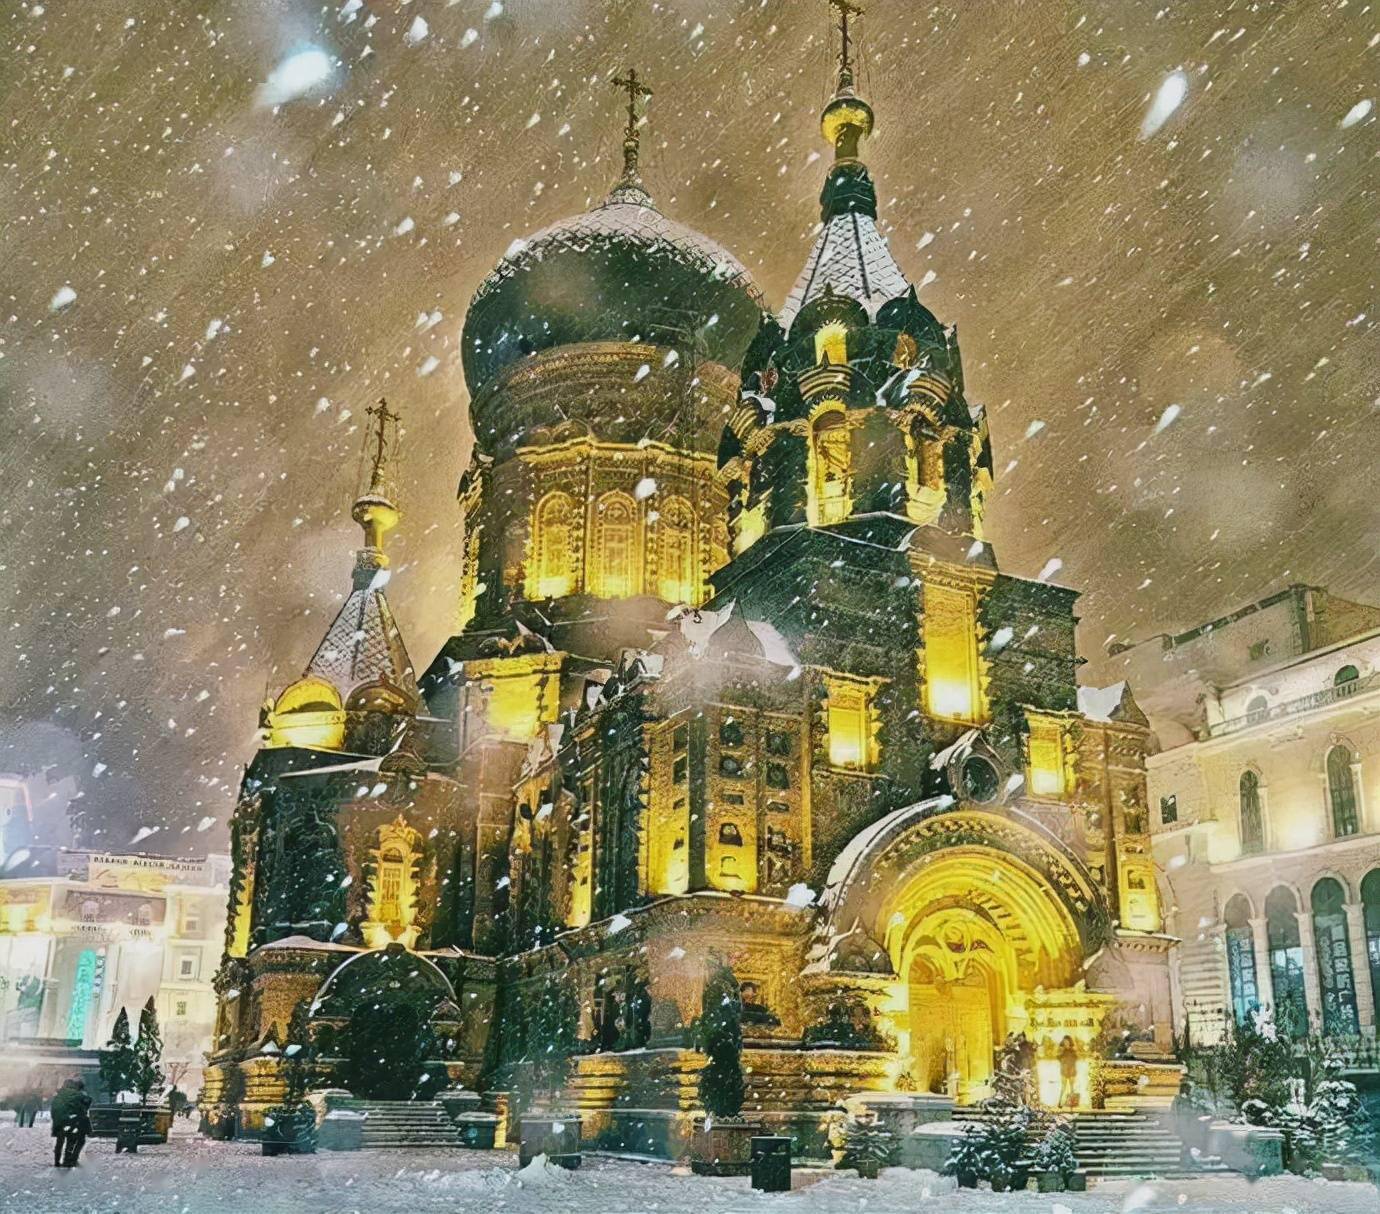 冬天索菲亚教堂图片